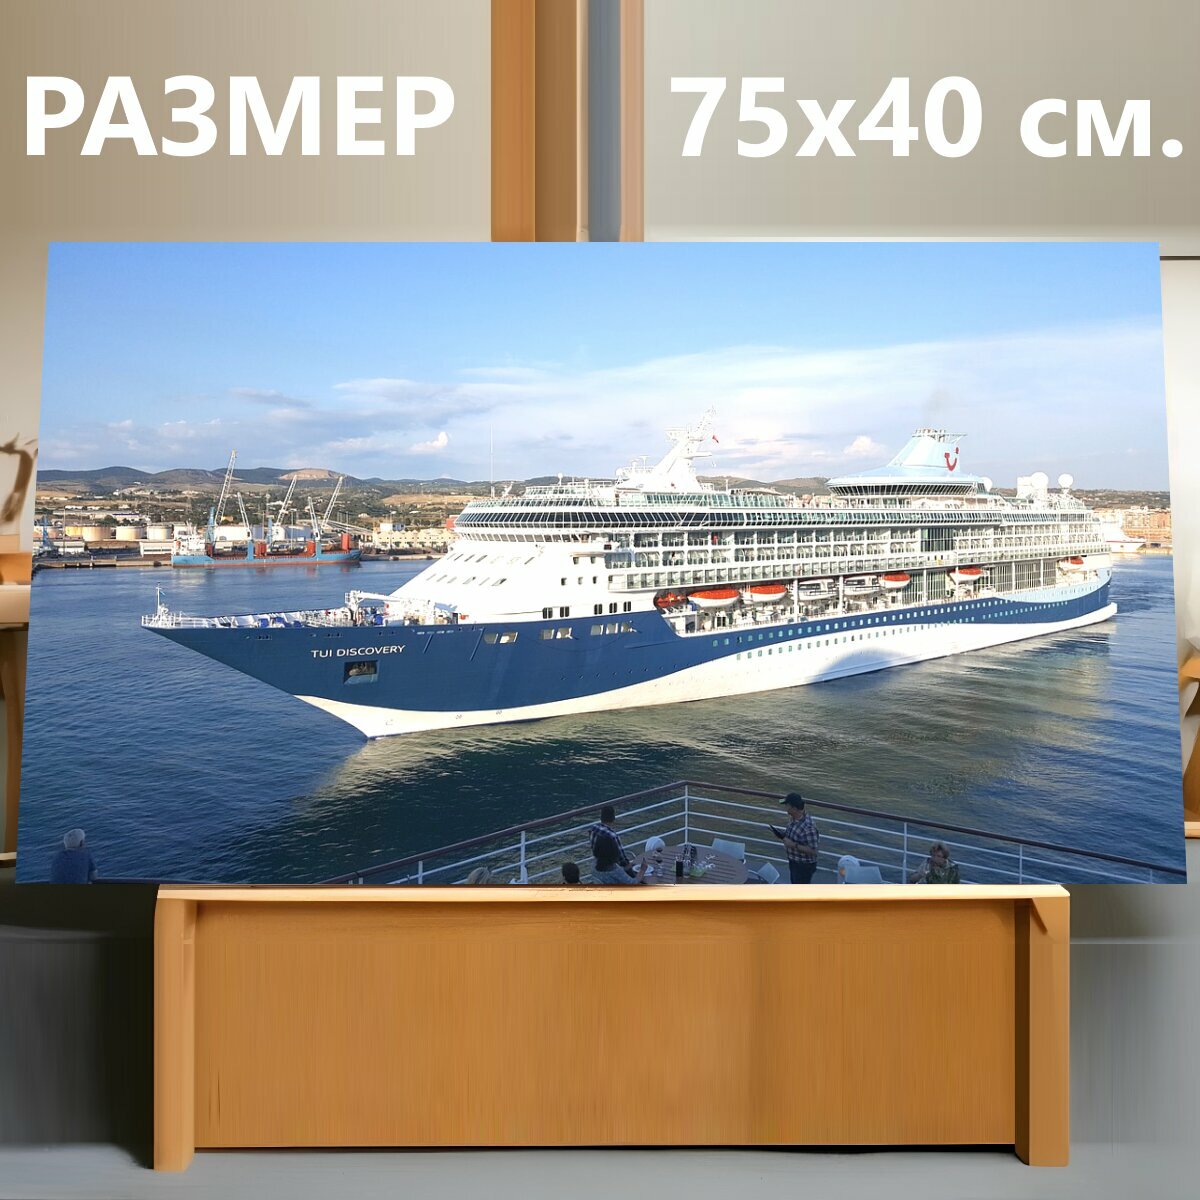 Картина на холсте "Круизный корабль, круиз, судно" на подрамнике 75х40 см. для интерьера